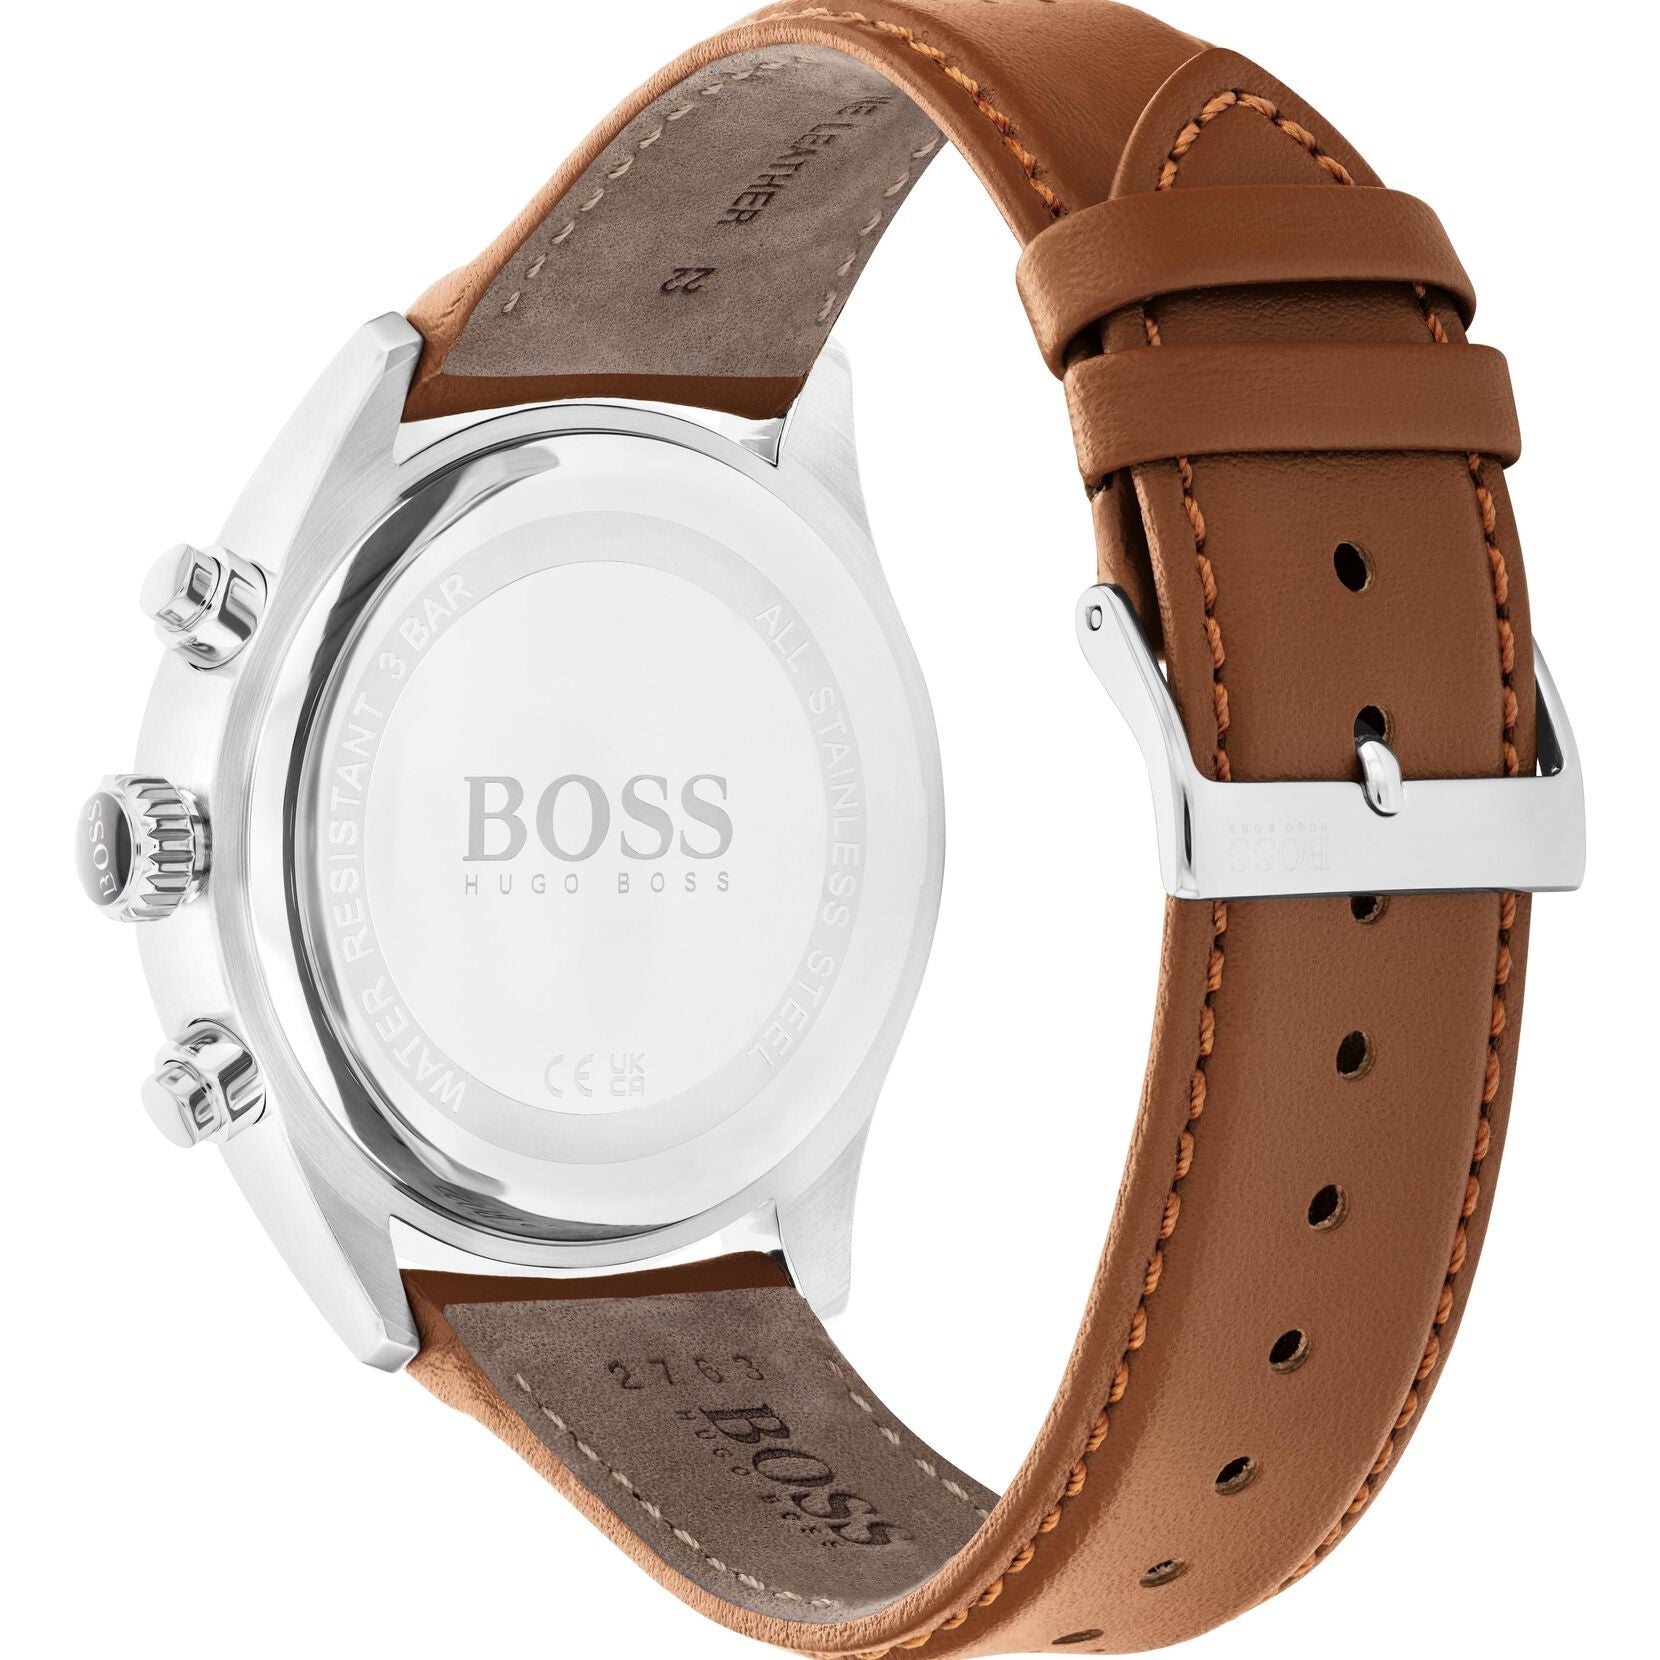 Hugo Boss Hugo Boss Grand Prix Chronograph White Dial Men's Watch 1513475